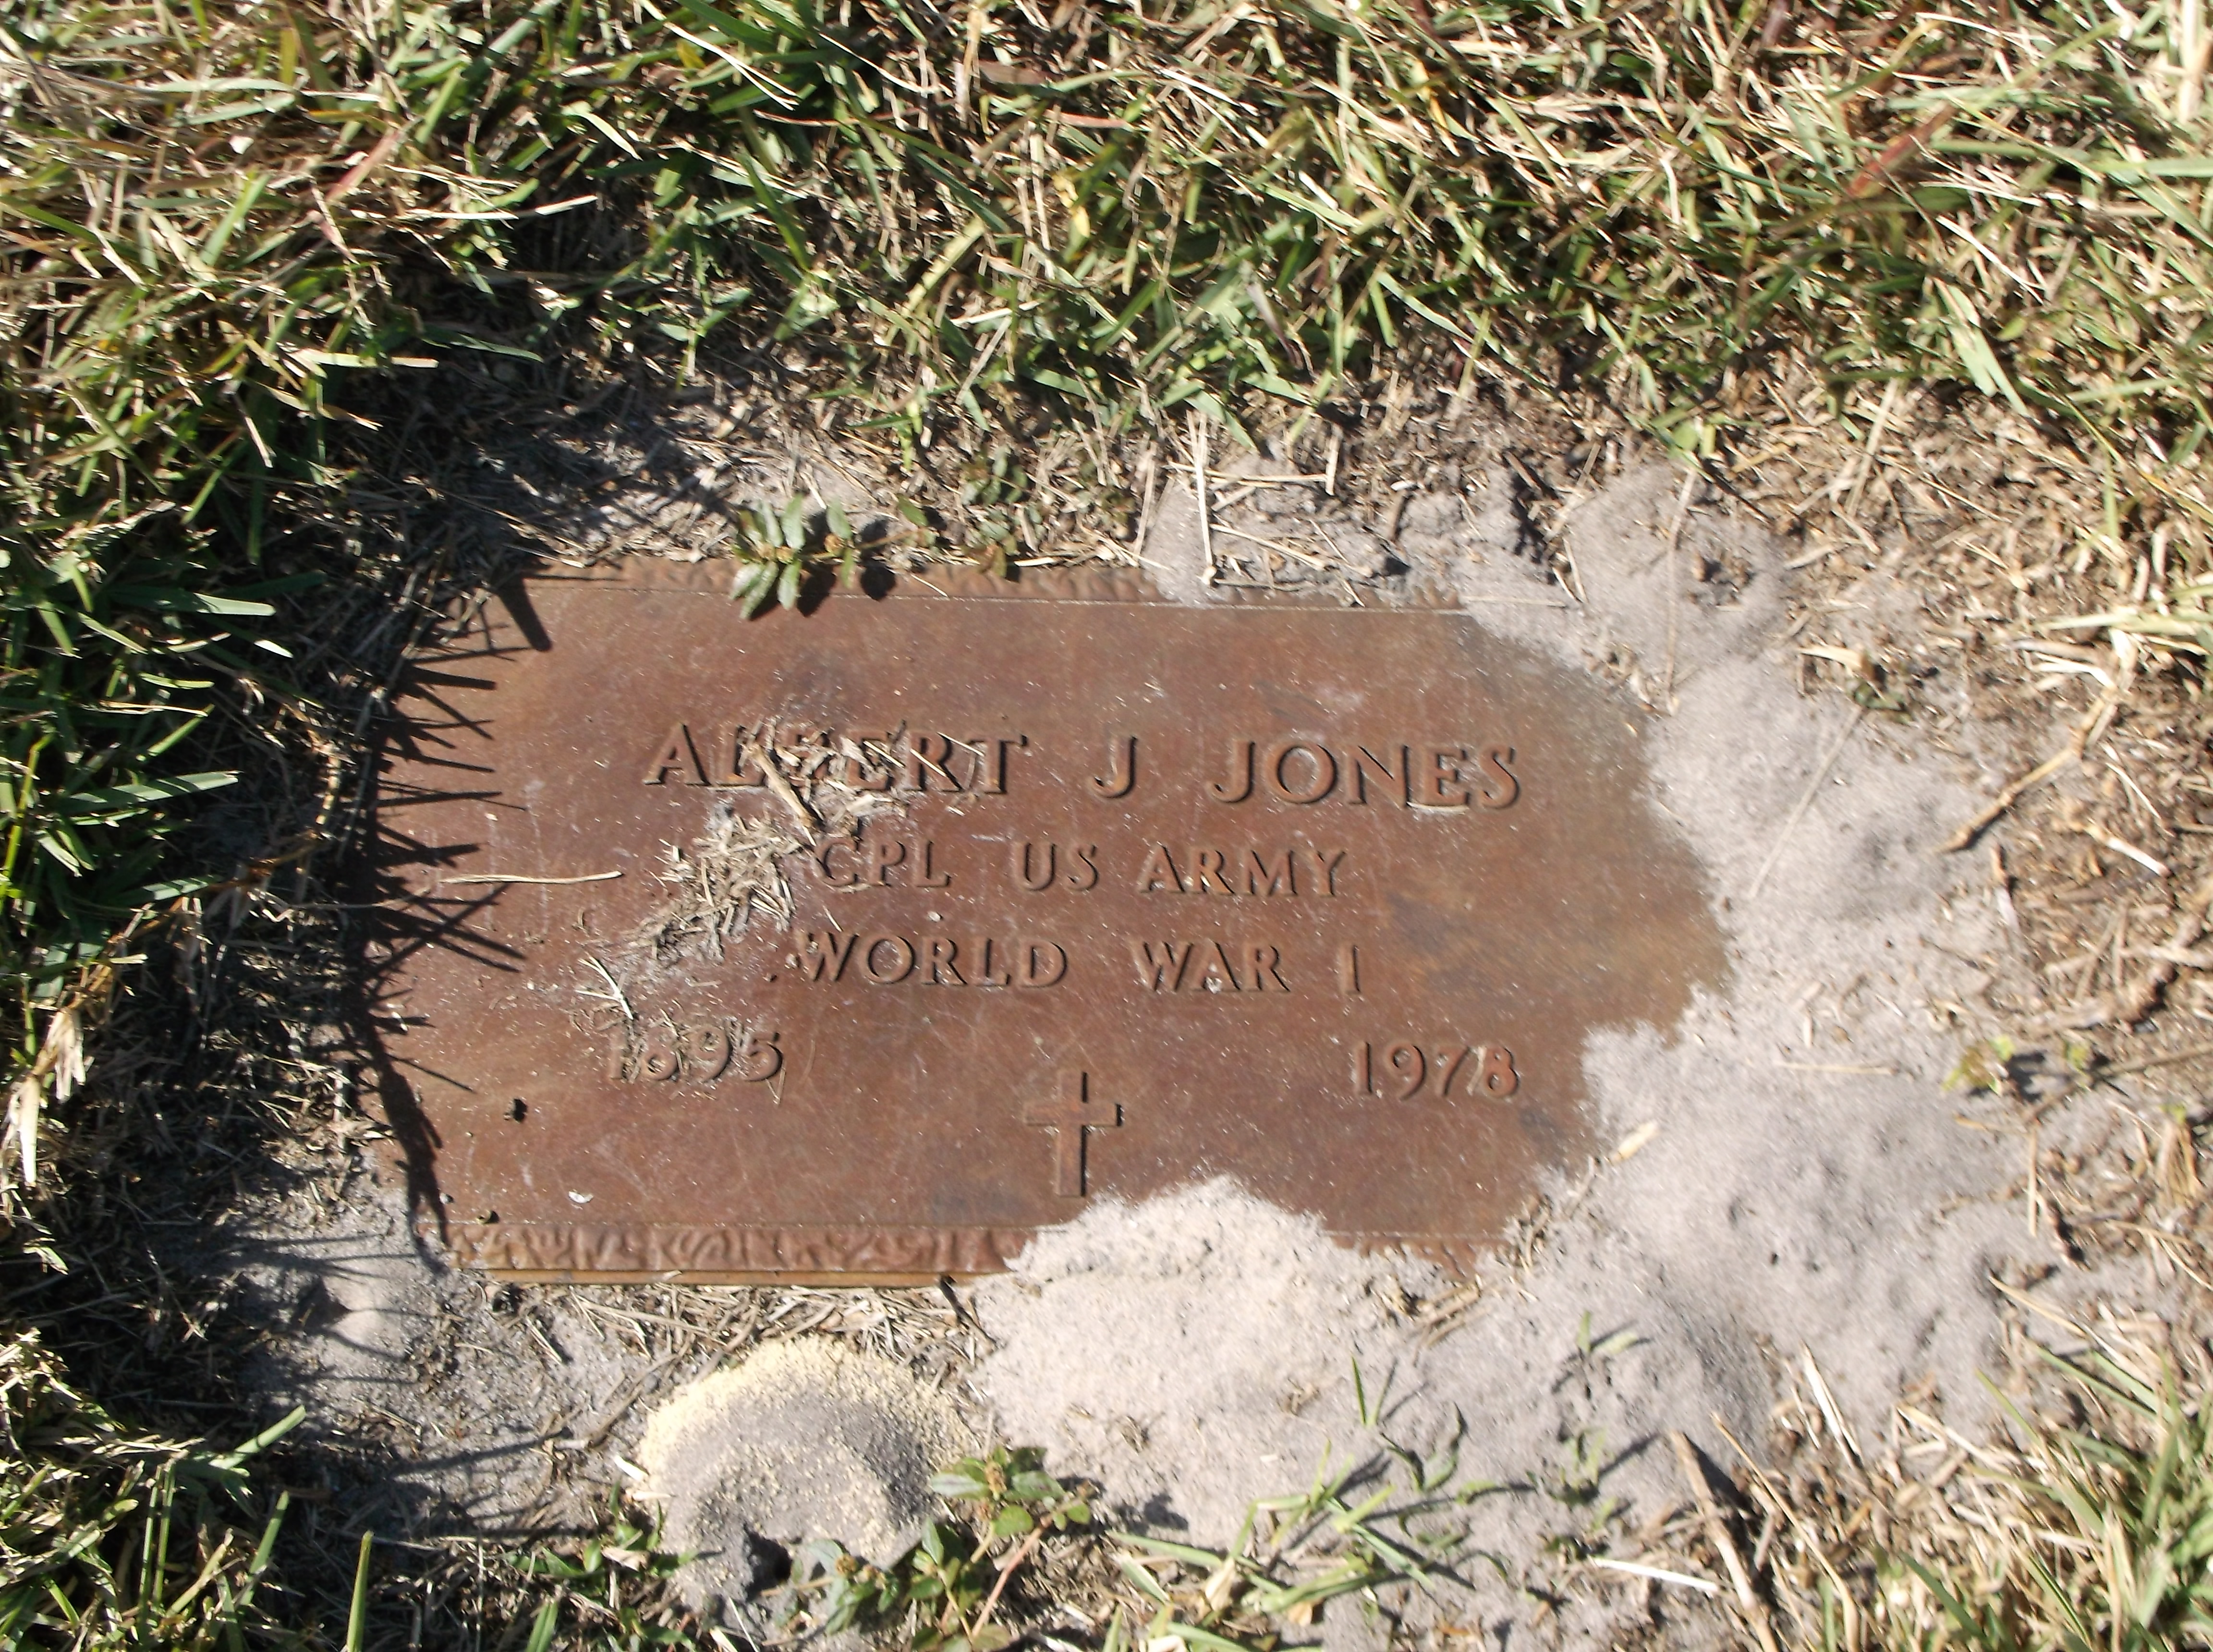 Albert J Jones